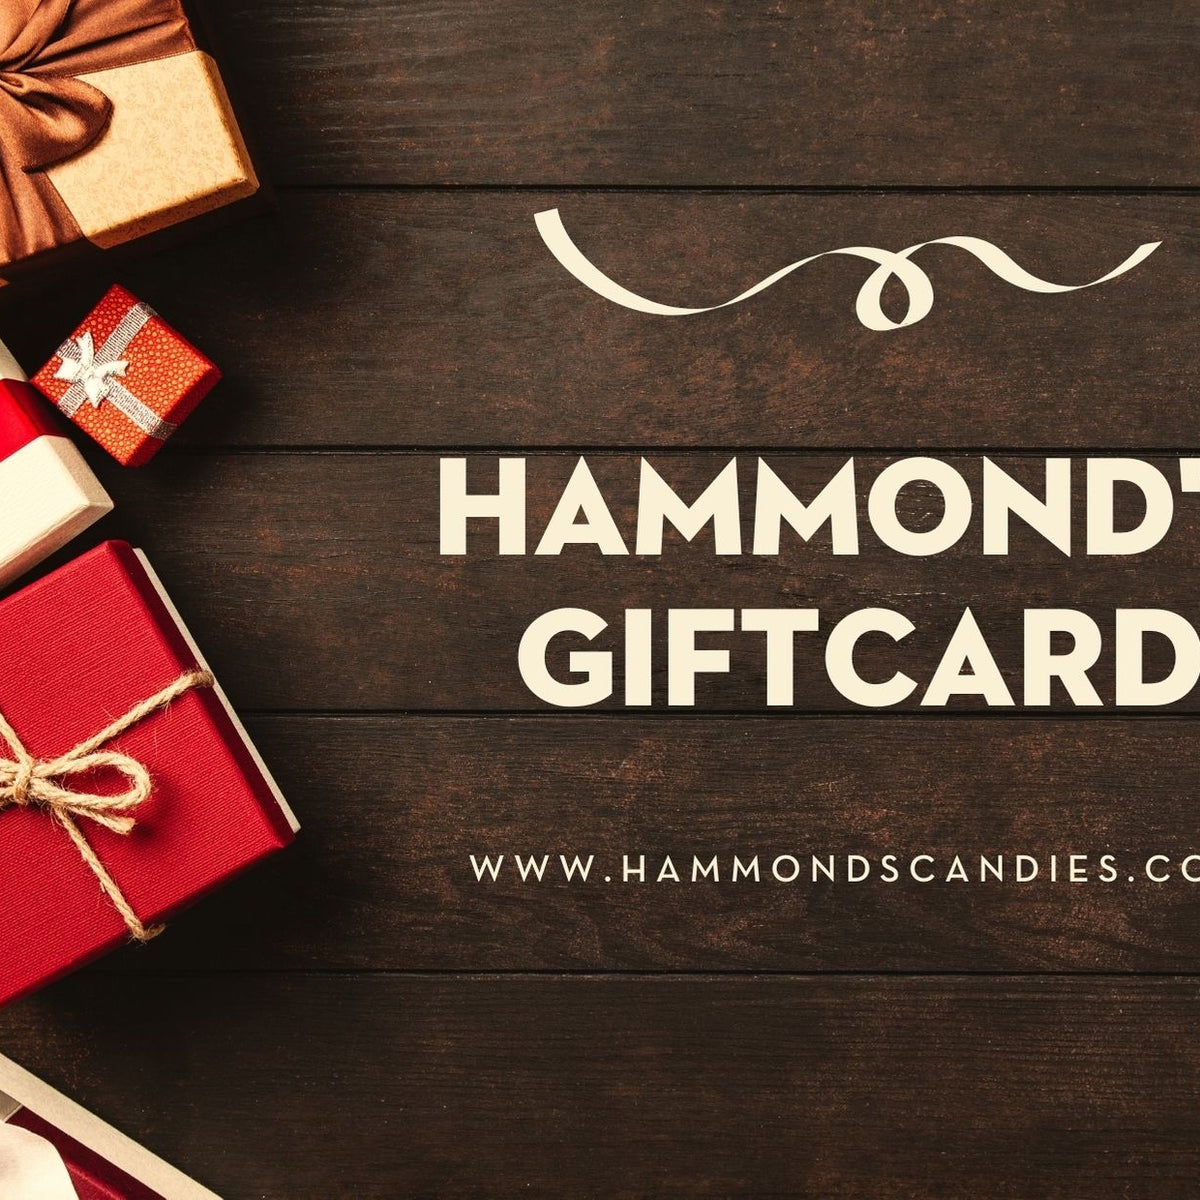 Hammond's Gift Card